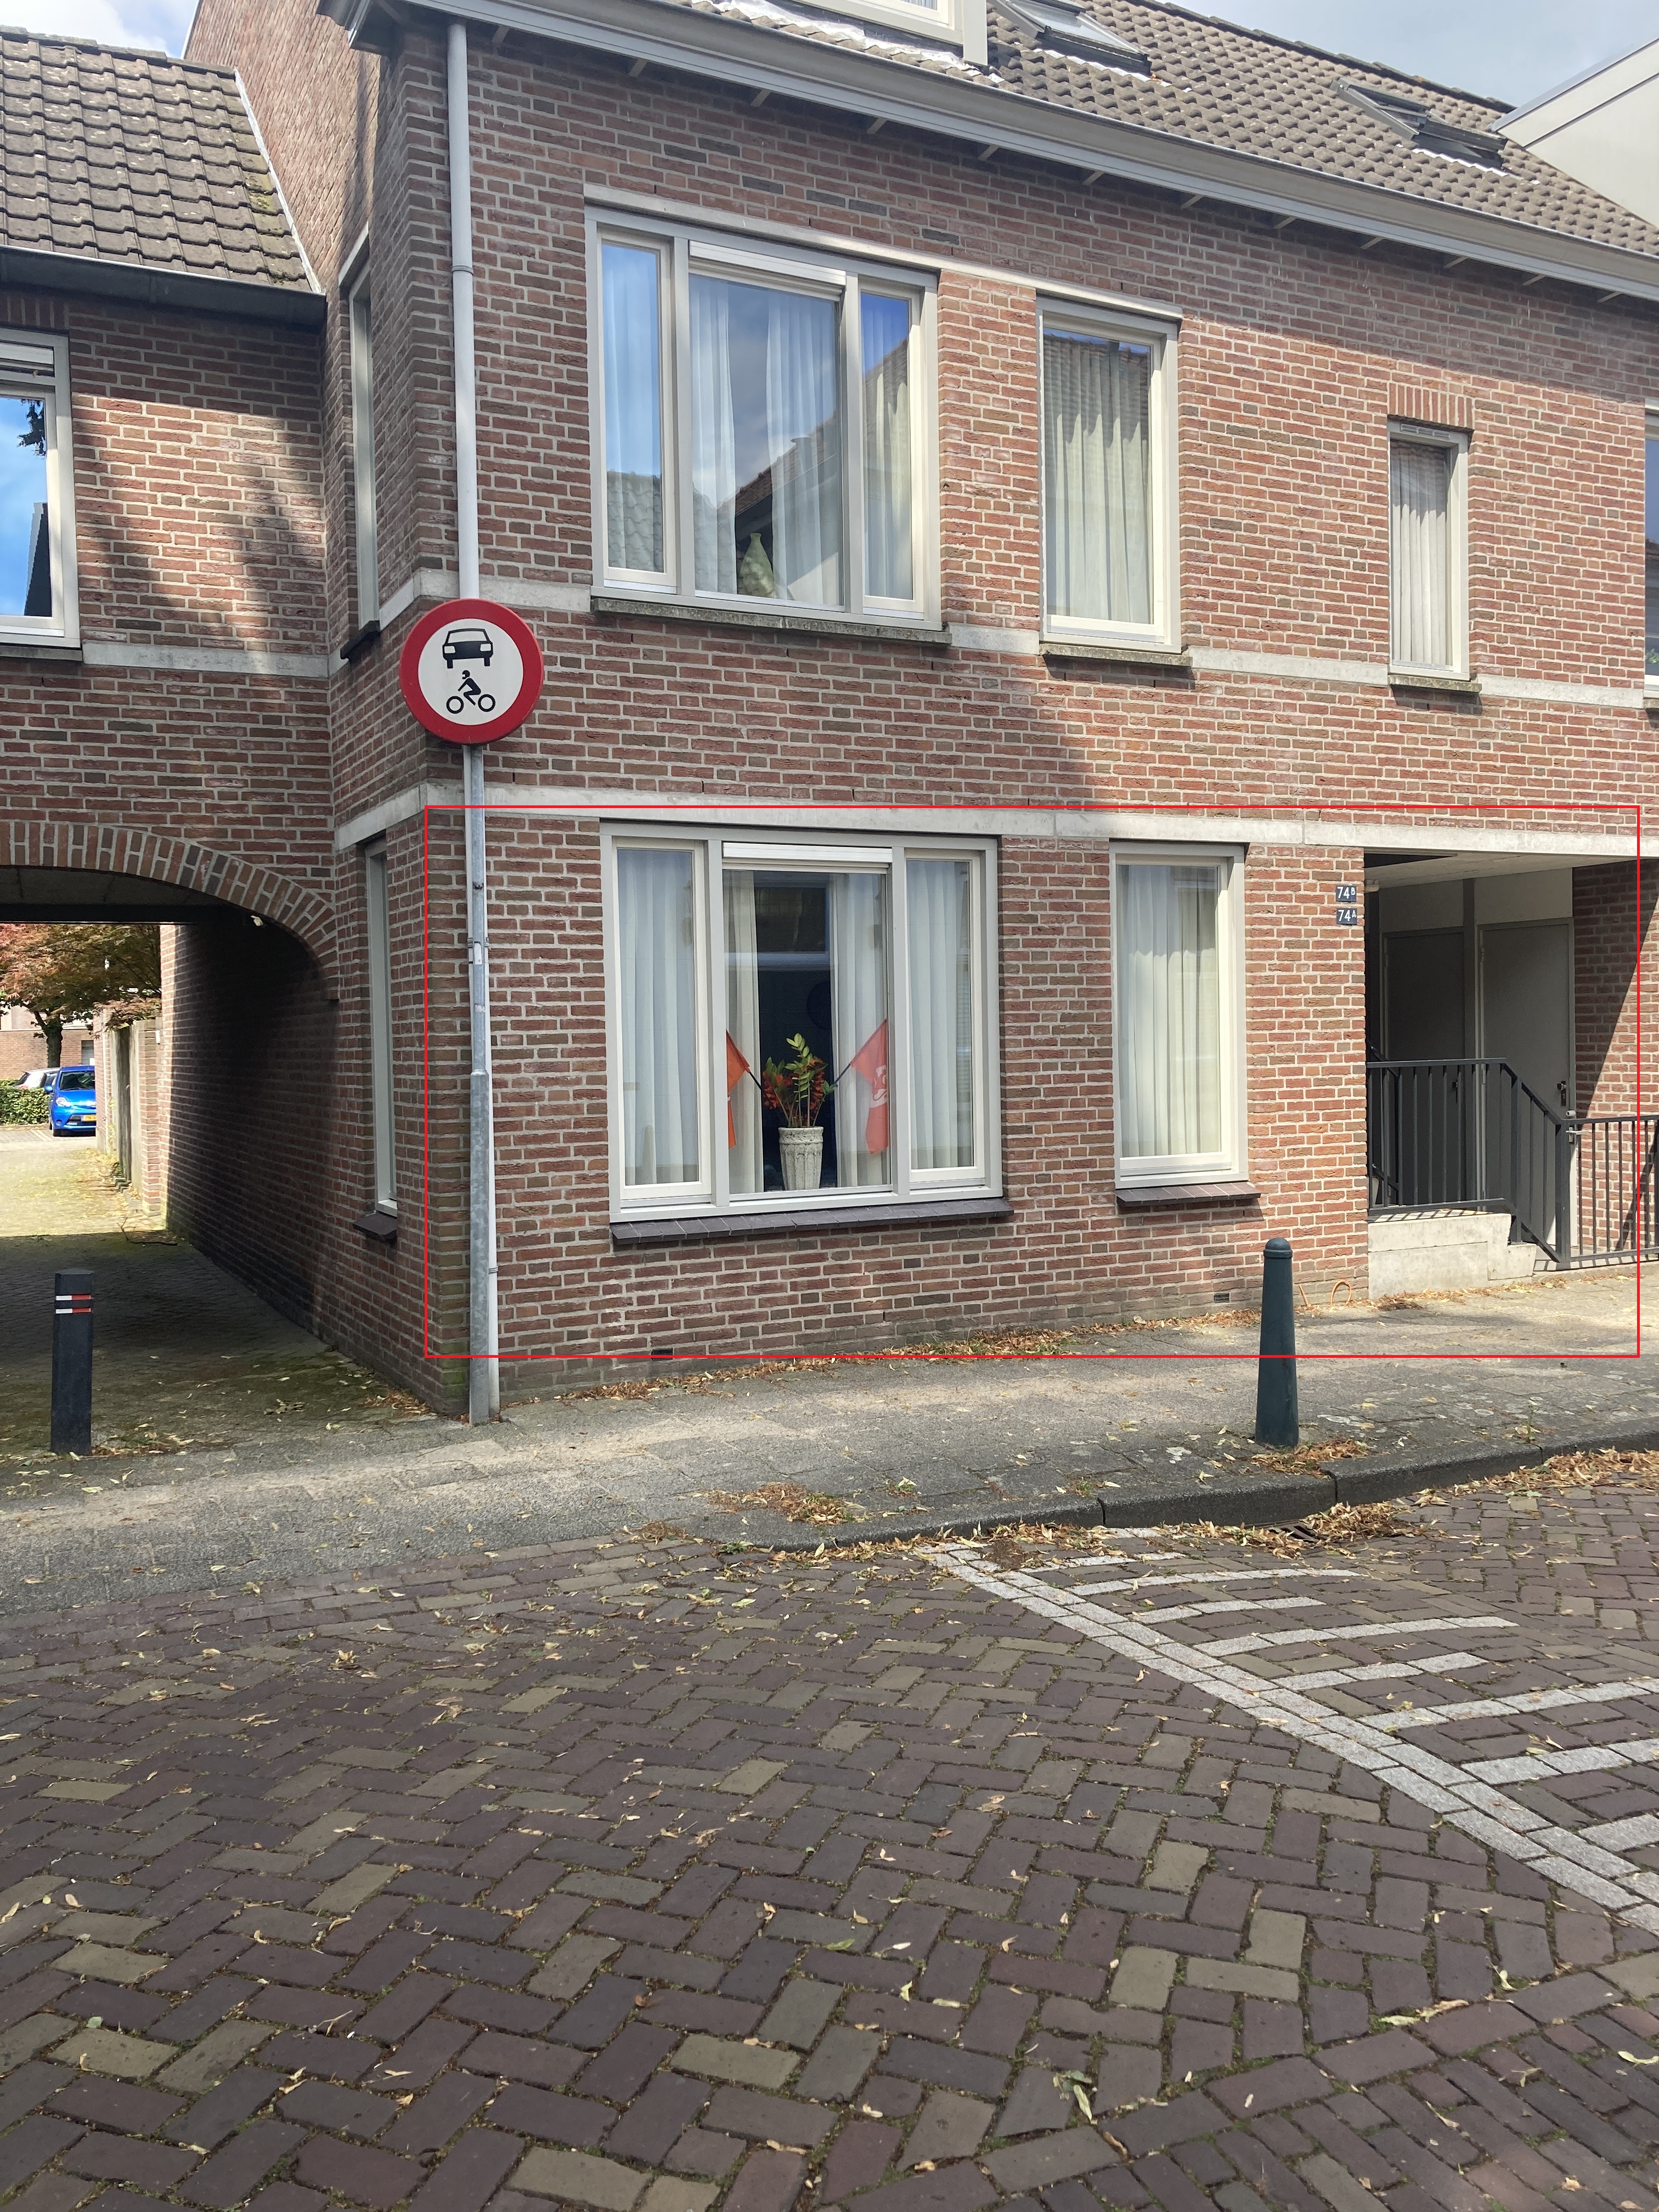 Kerkstraat 74, 5061 EK Oisterwijk, Nederland